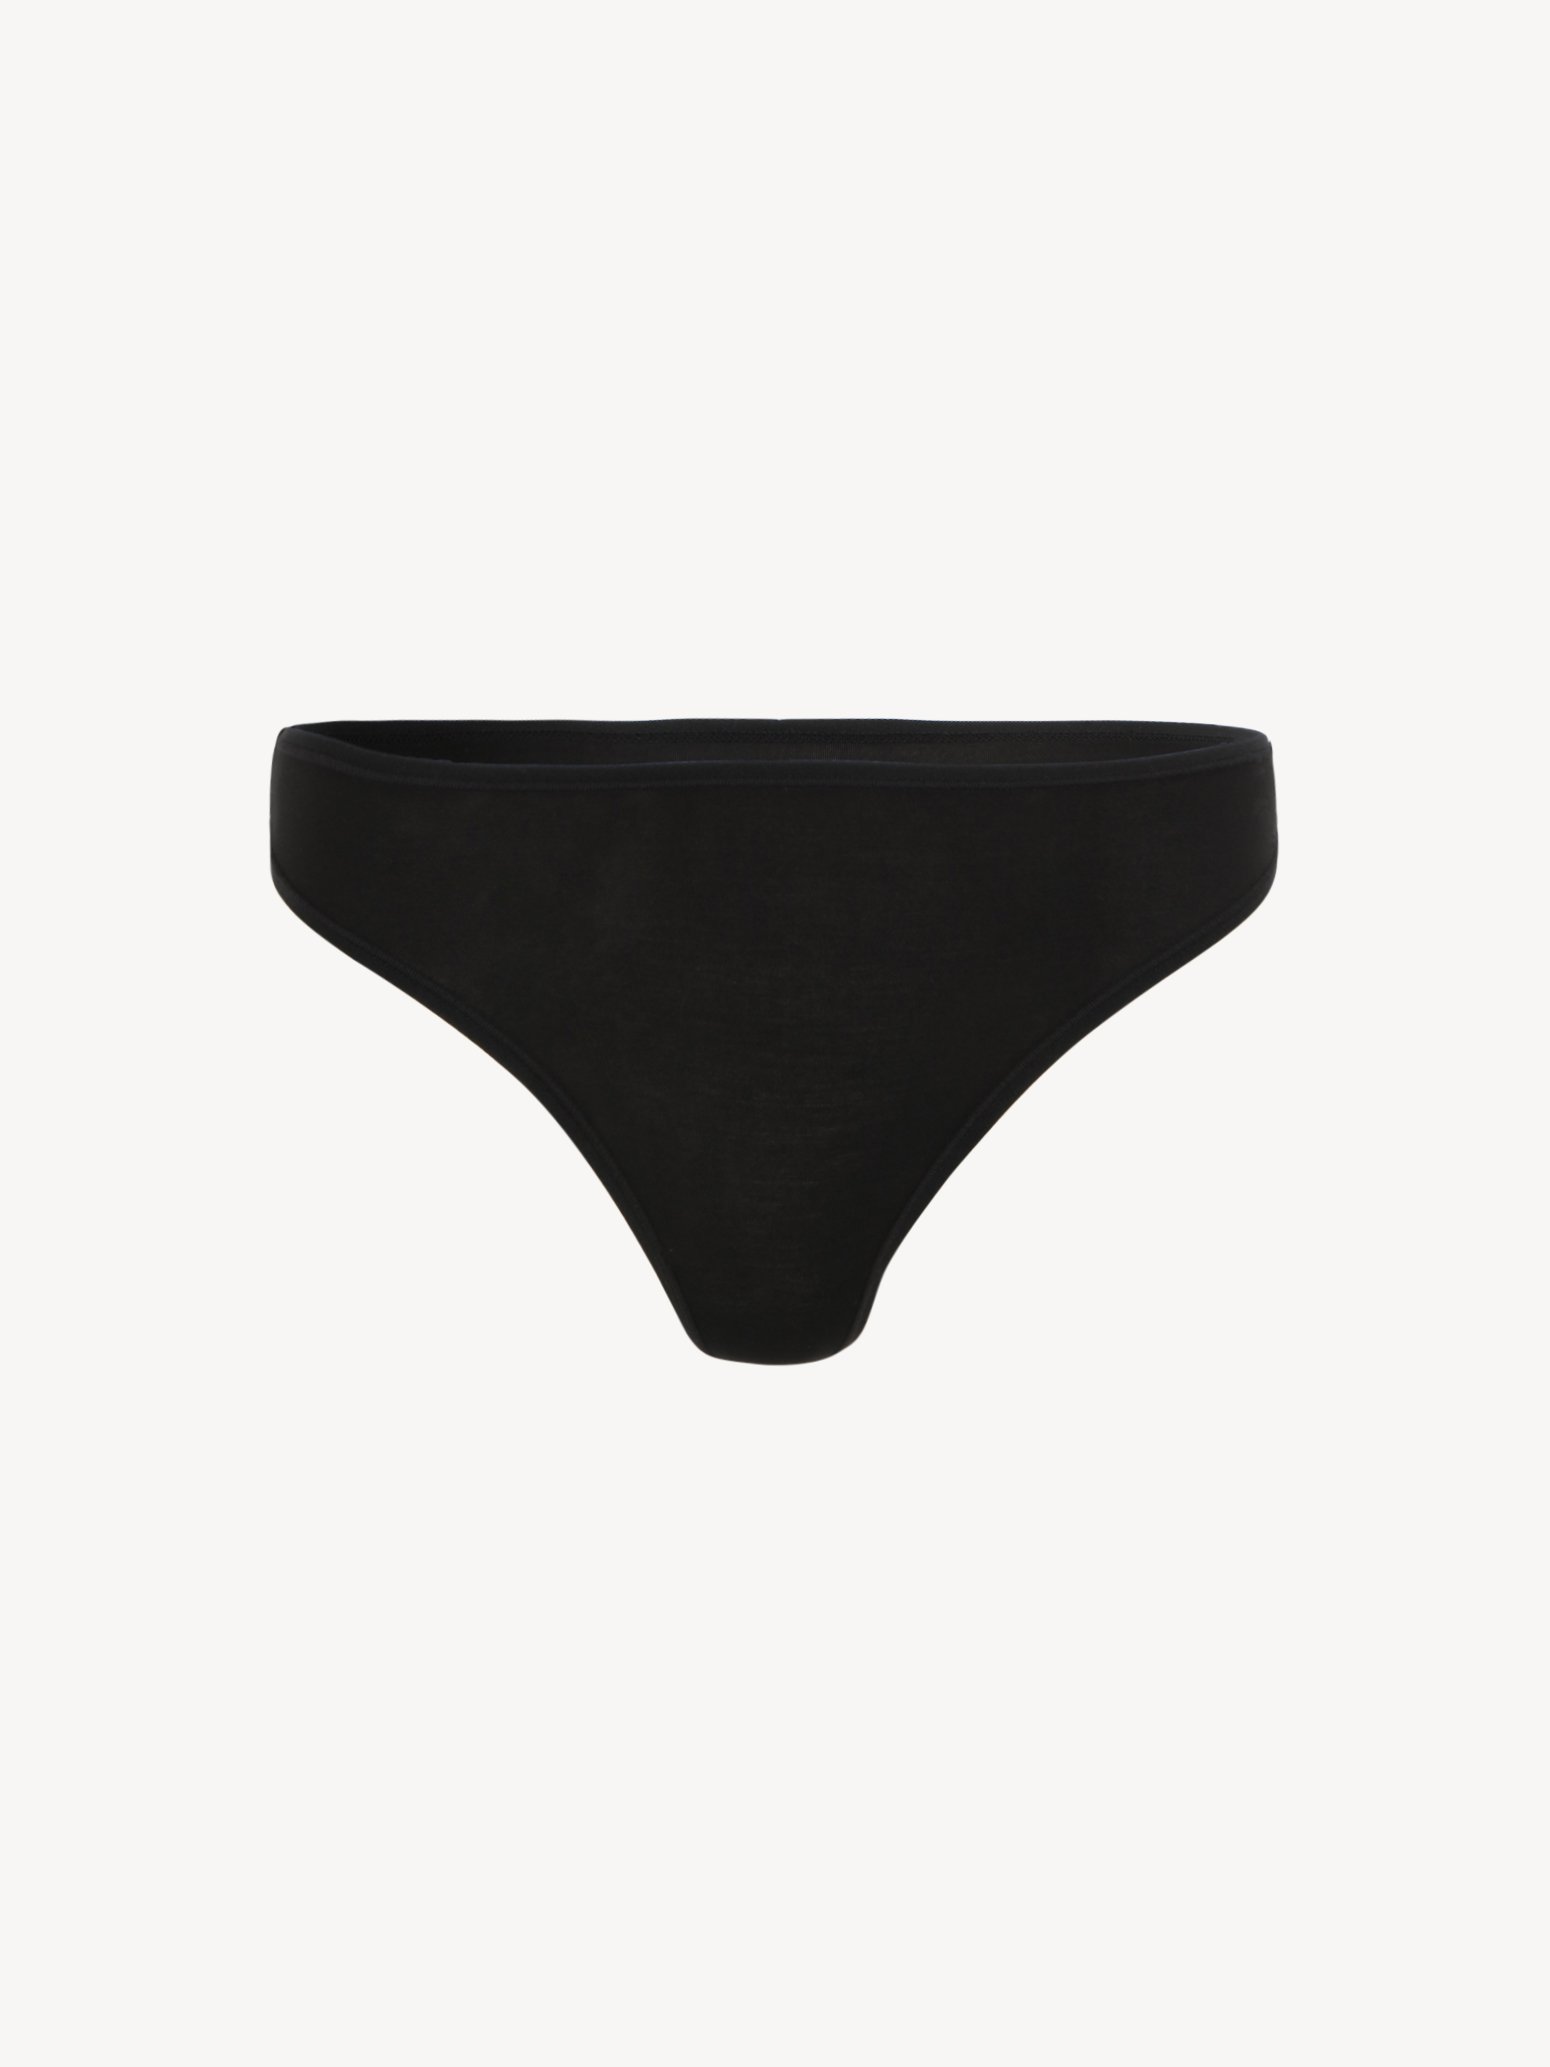 Briefs Pack of 3 - black TAW0195-80004: Buy Tamaris Underwear online!